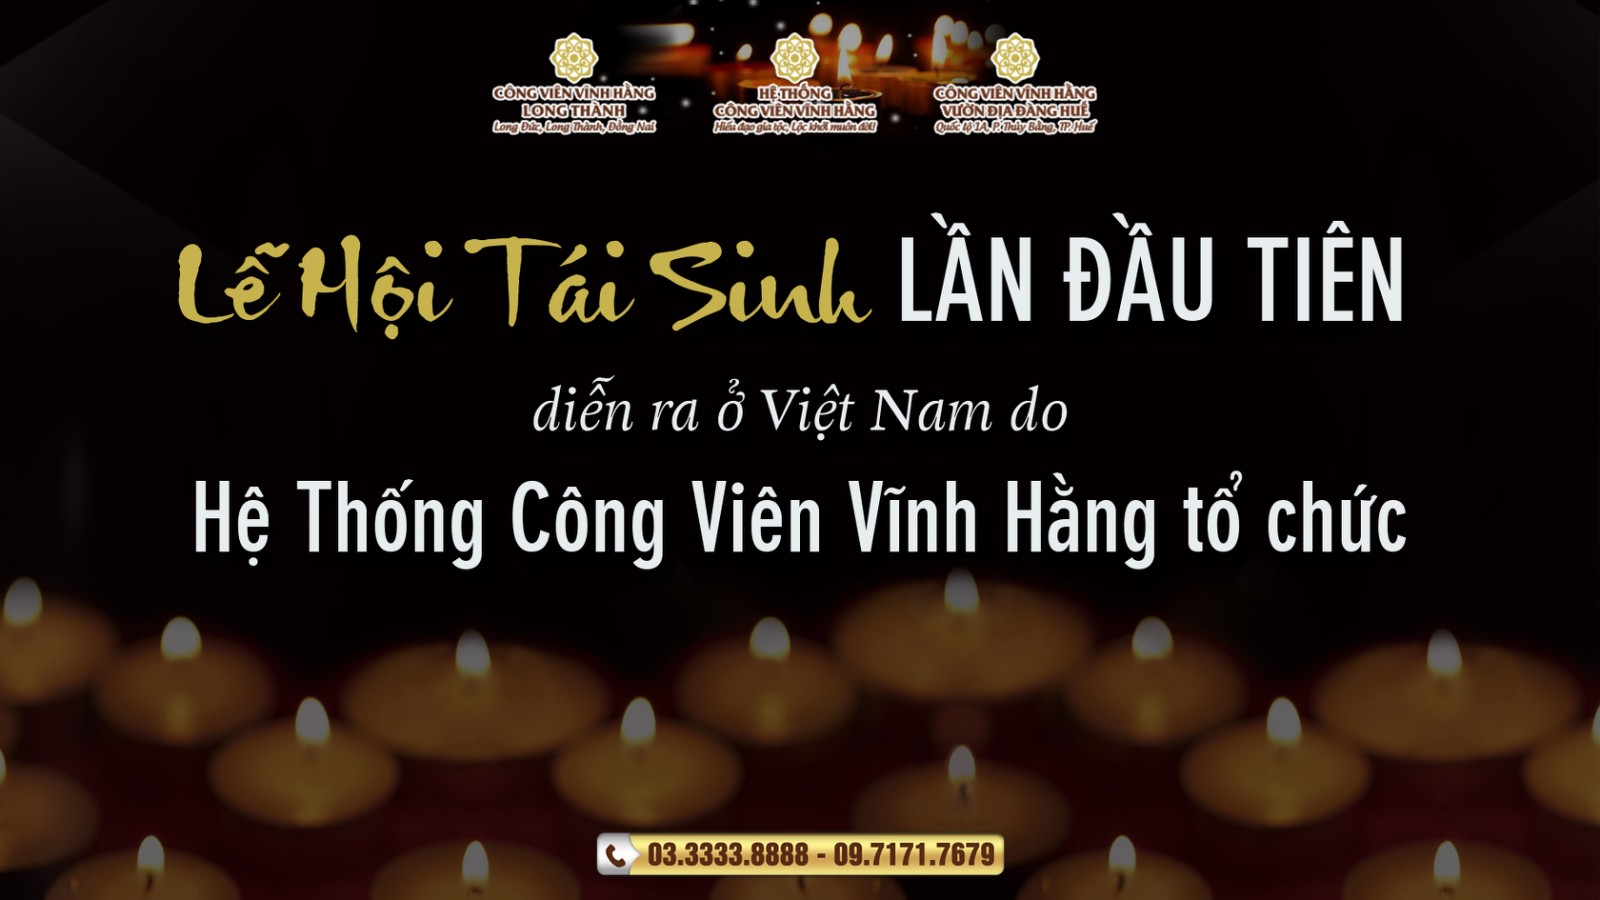 Dư âm diệu kỳ của Lễ Hội Tái Sinh lần đầu tiên diễn ra ở Việt Nam